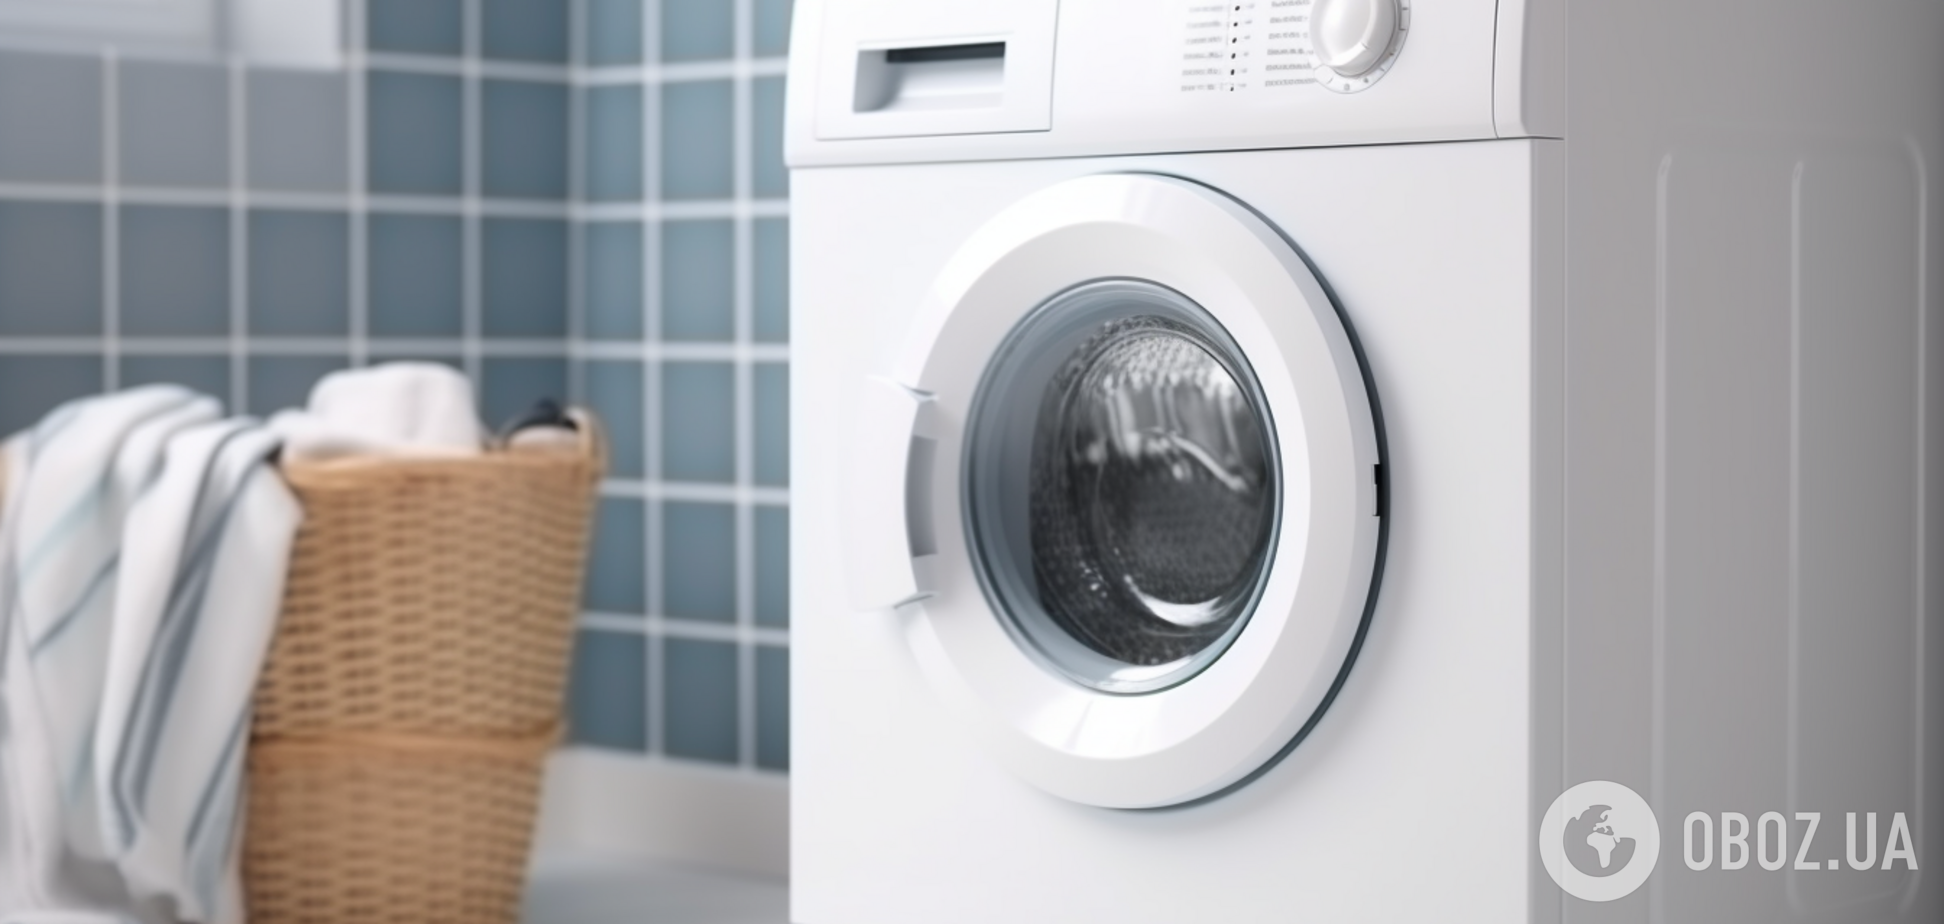 Одежда будет свежей, как никогда: в стиральной машинке нашли 'скрытую' спасательную кнопку